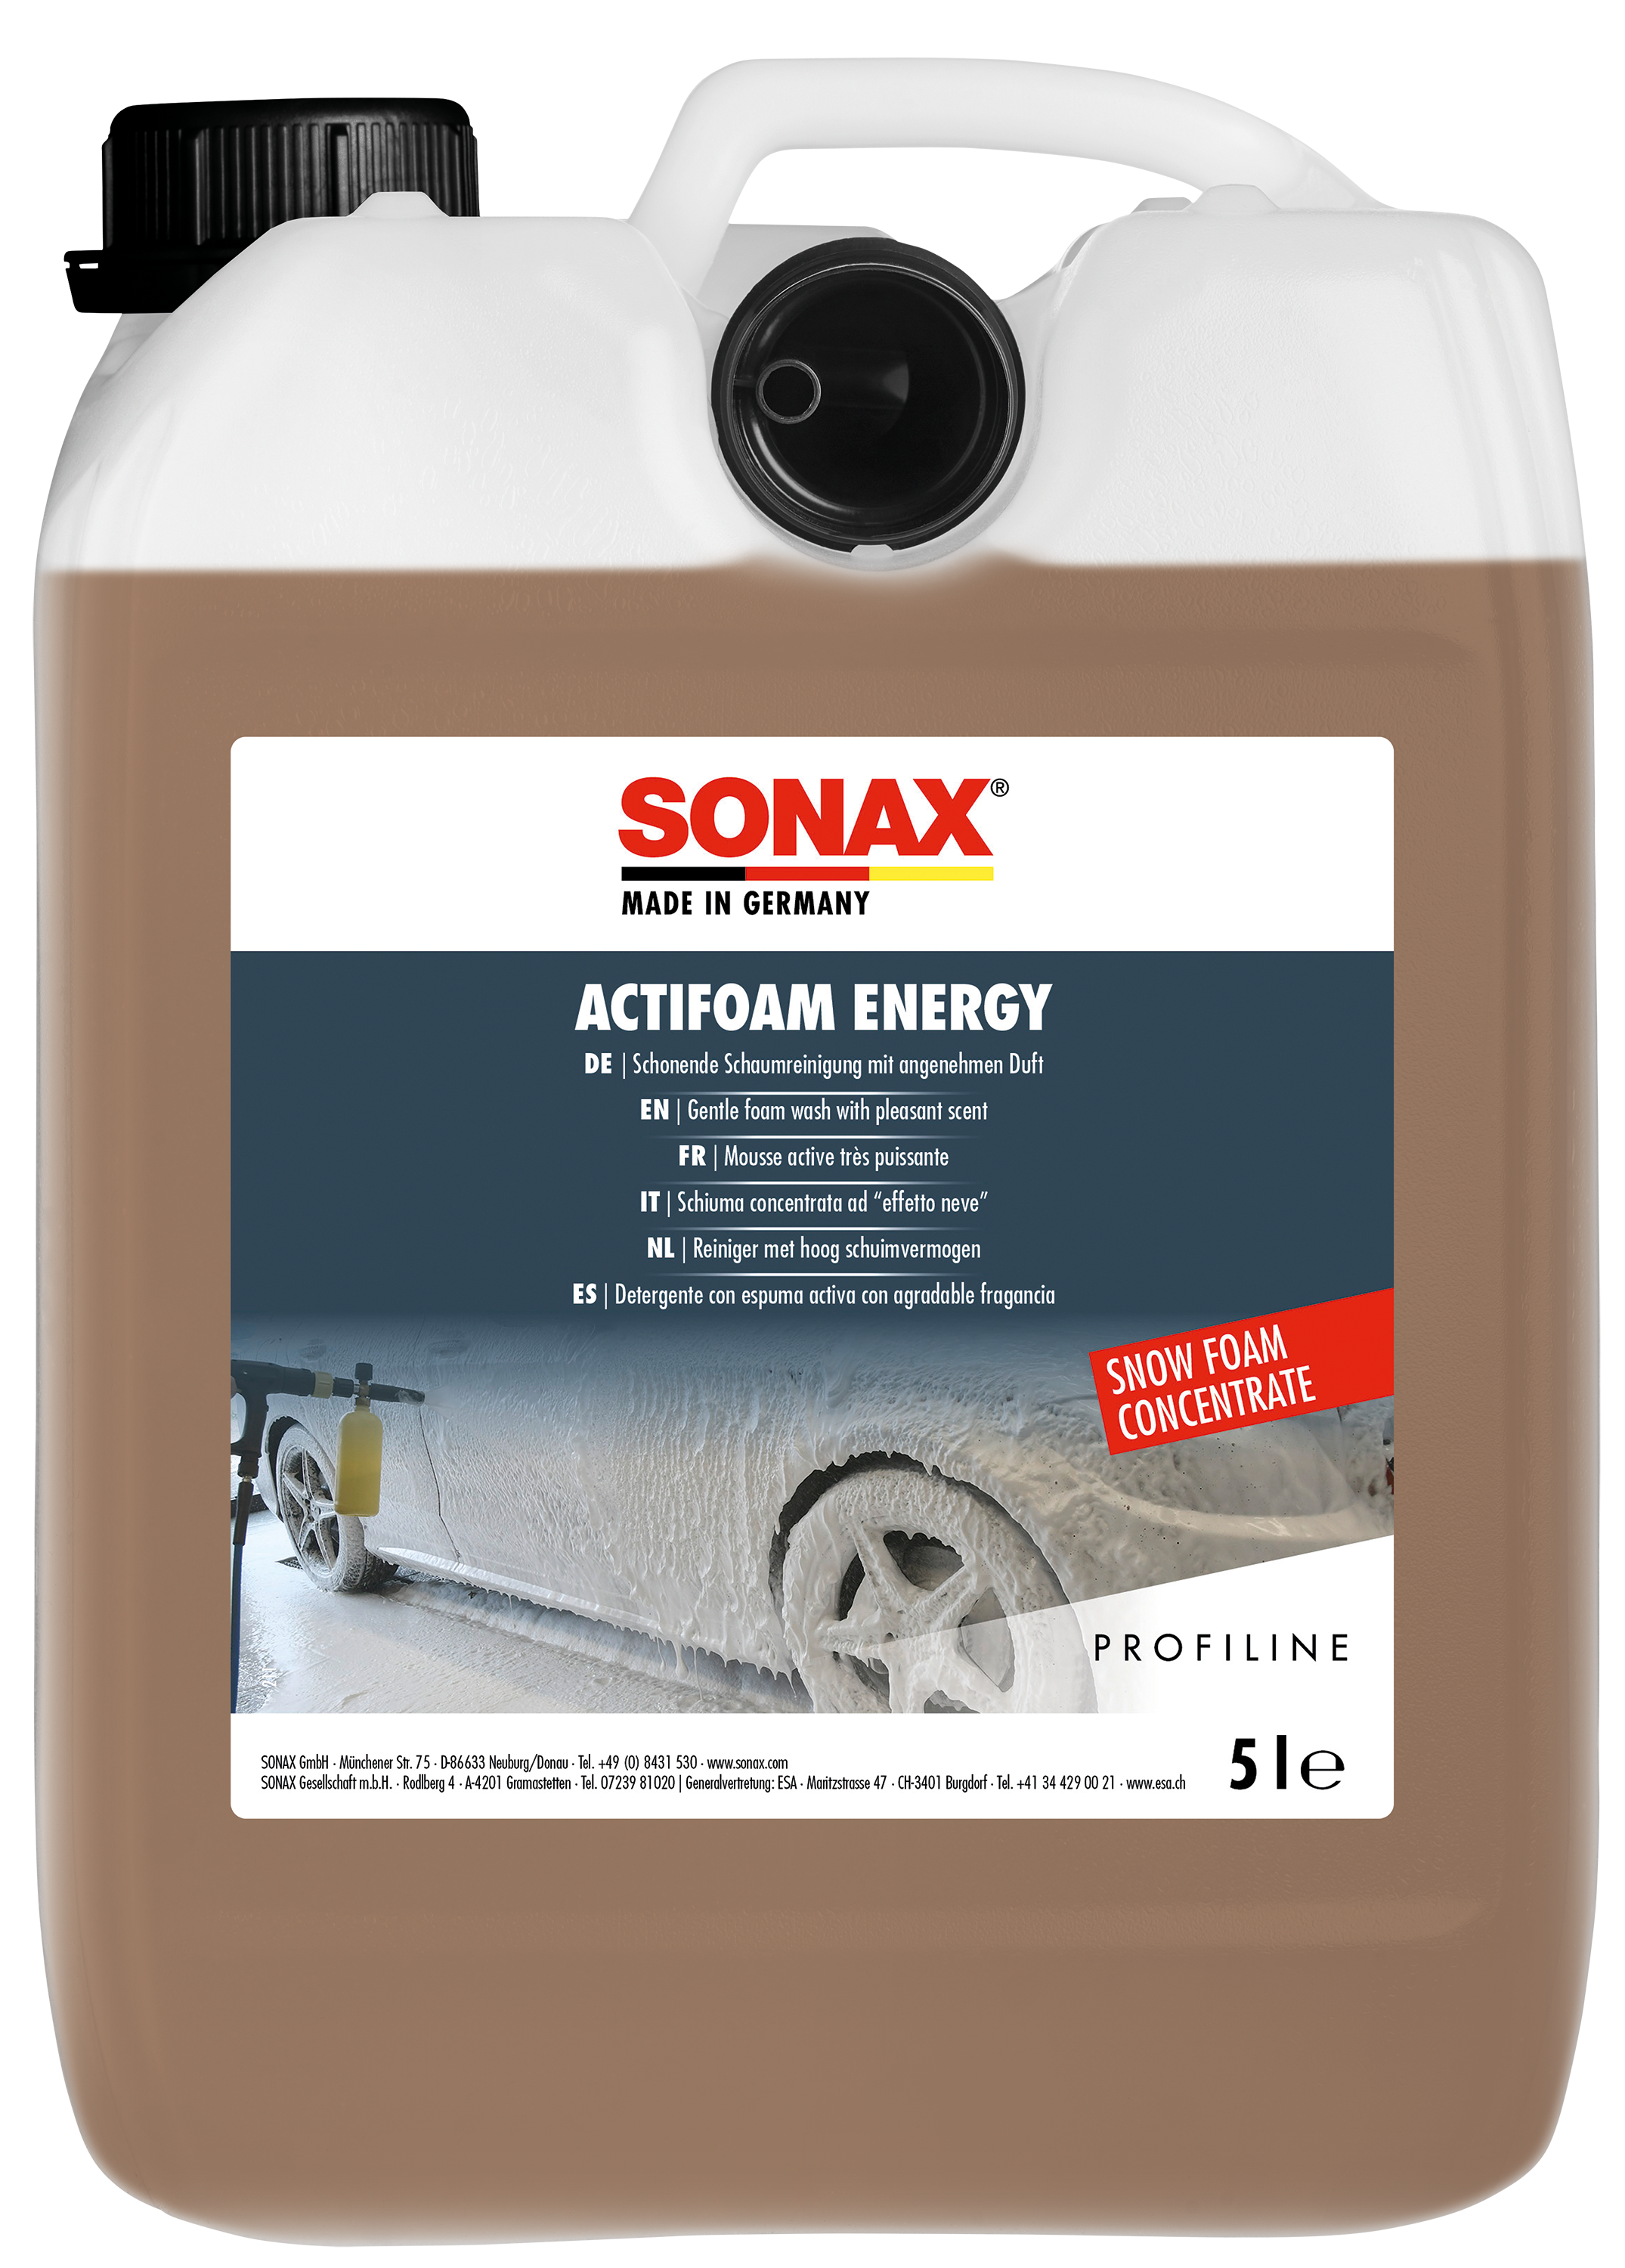 Buy Sonax Winter Edition Felgenreiniger 140ml - foodora MARKET Innsbruck